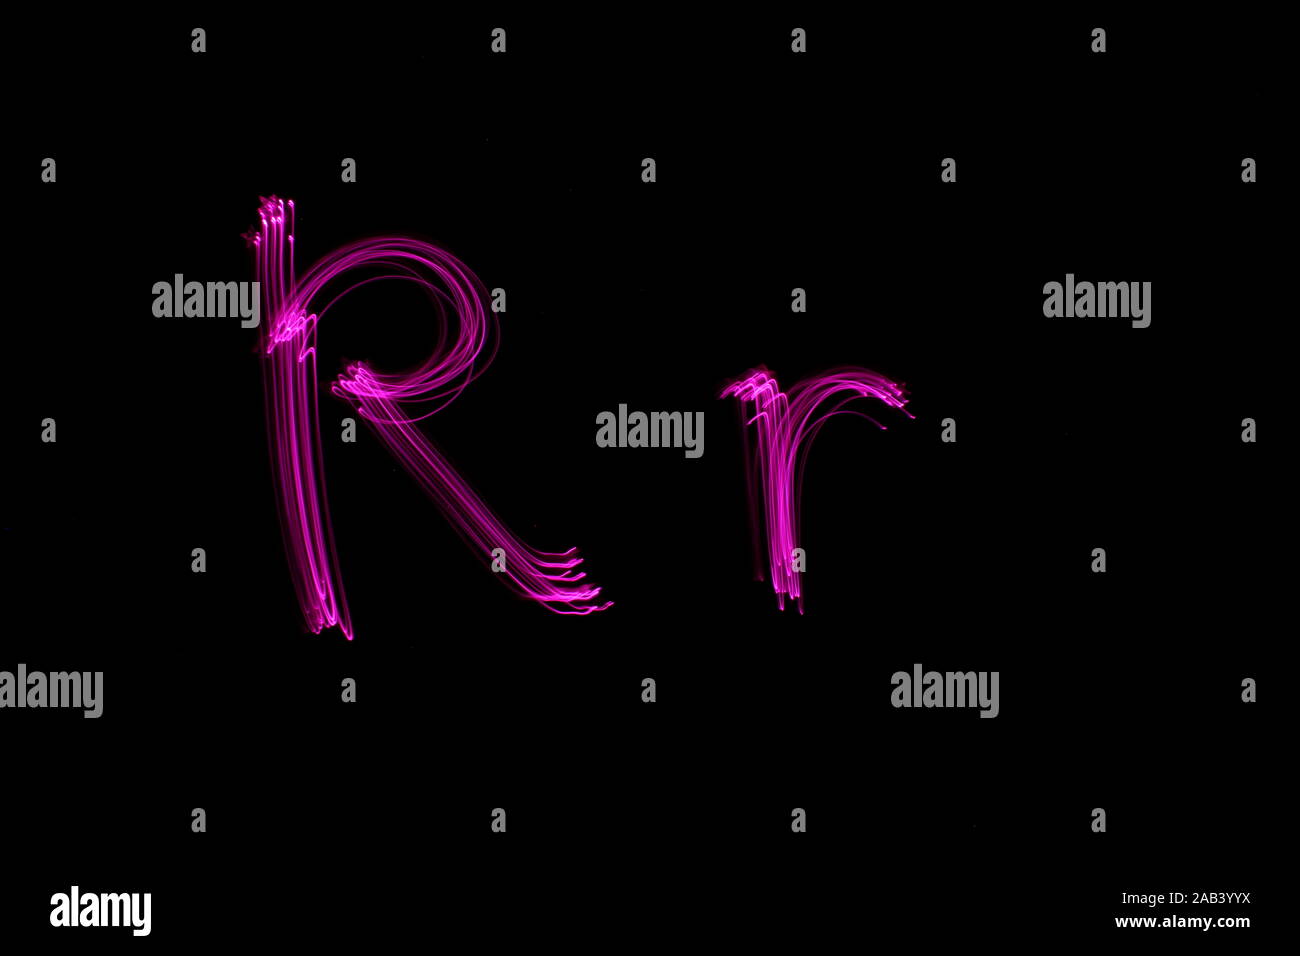 Une longue exposition photo de la lettre r en couleur néon rose, en majuscules et minuscules, motif de lignes parallèles sur un fond noir. Banque D'Images